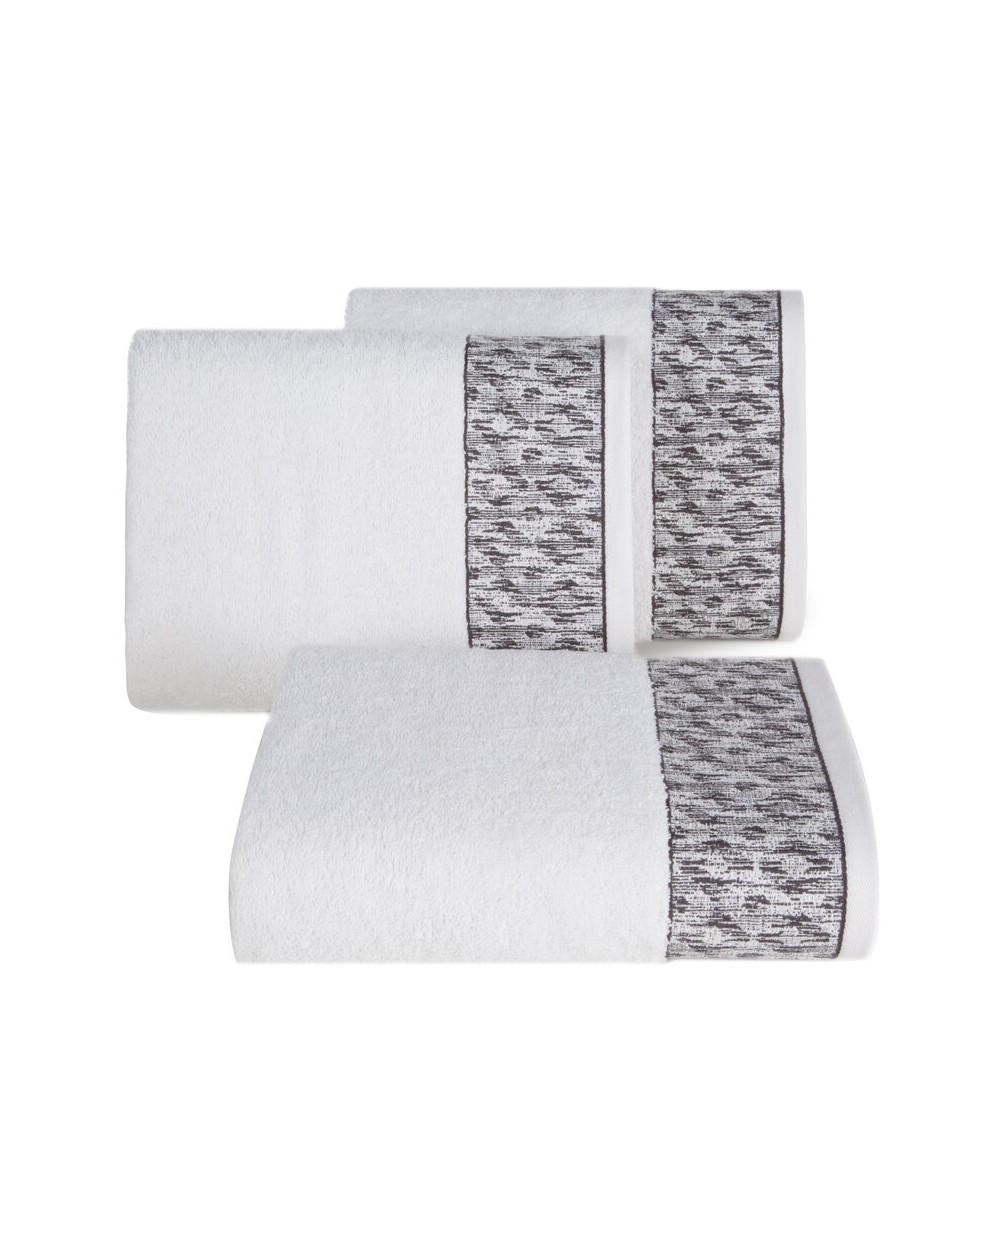 Ręcznik bawełna 50x90 Kiara biały